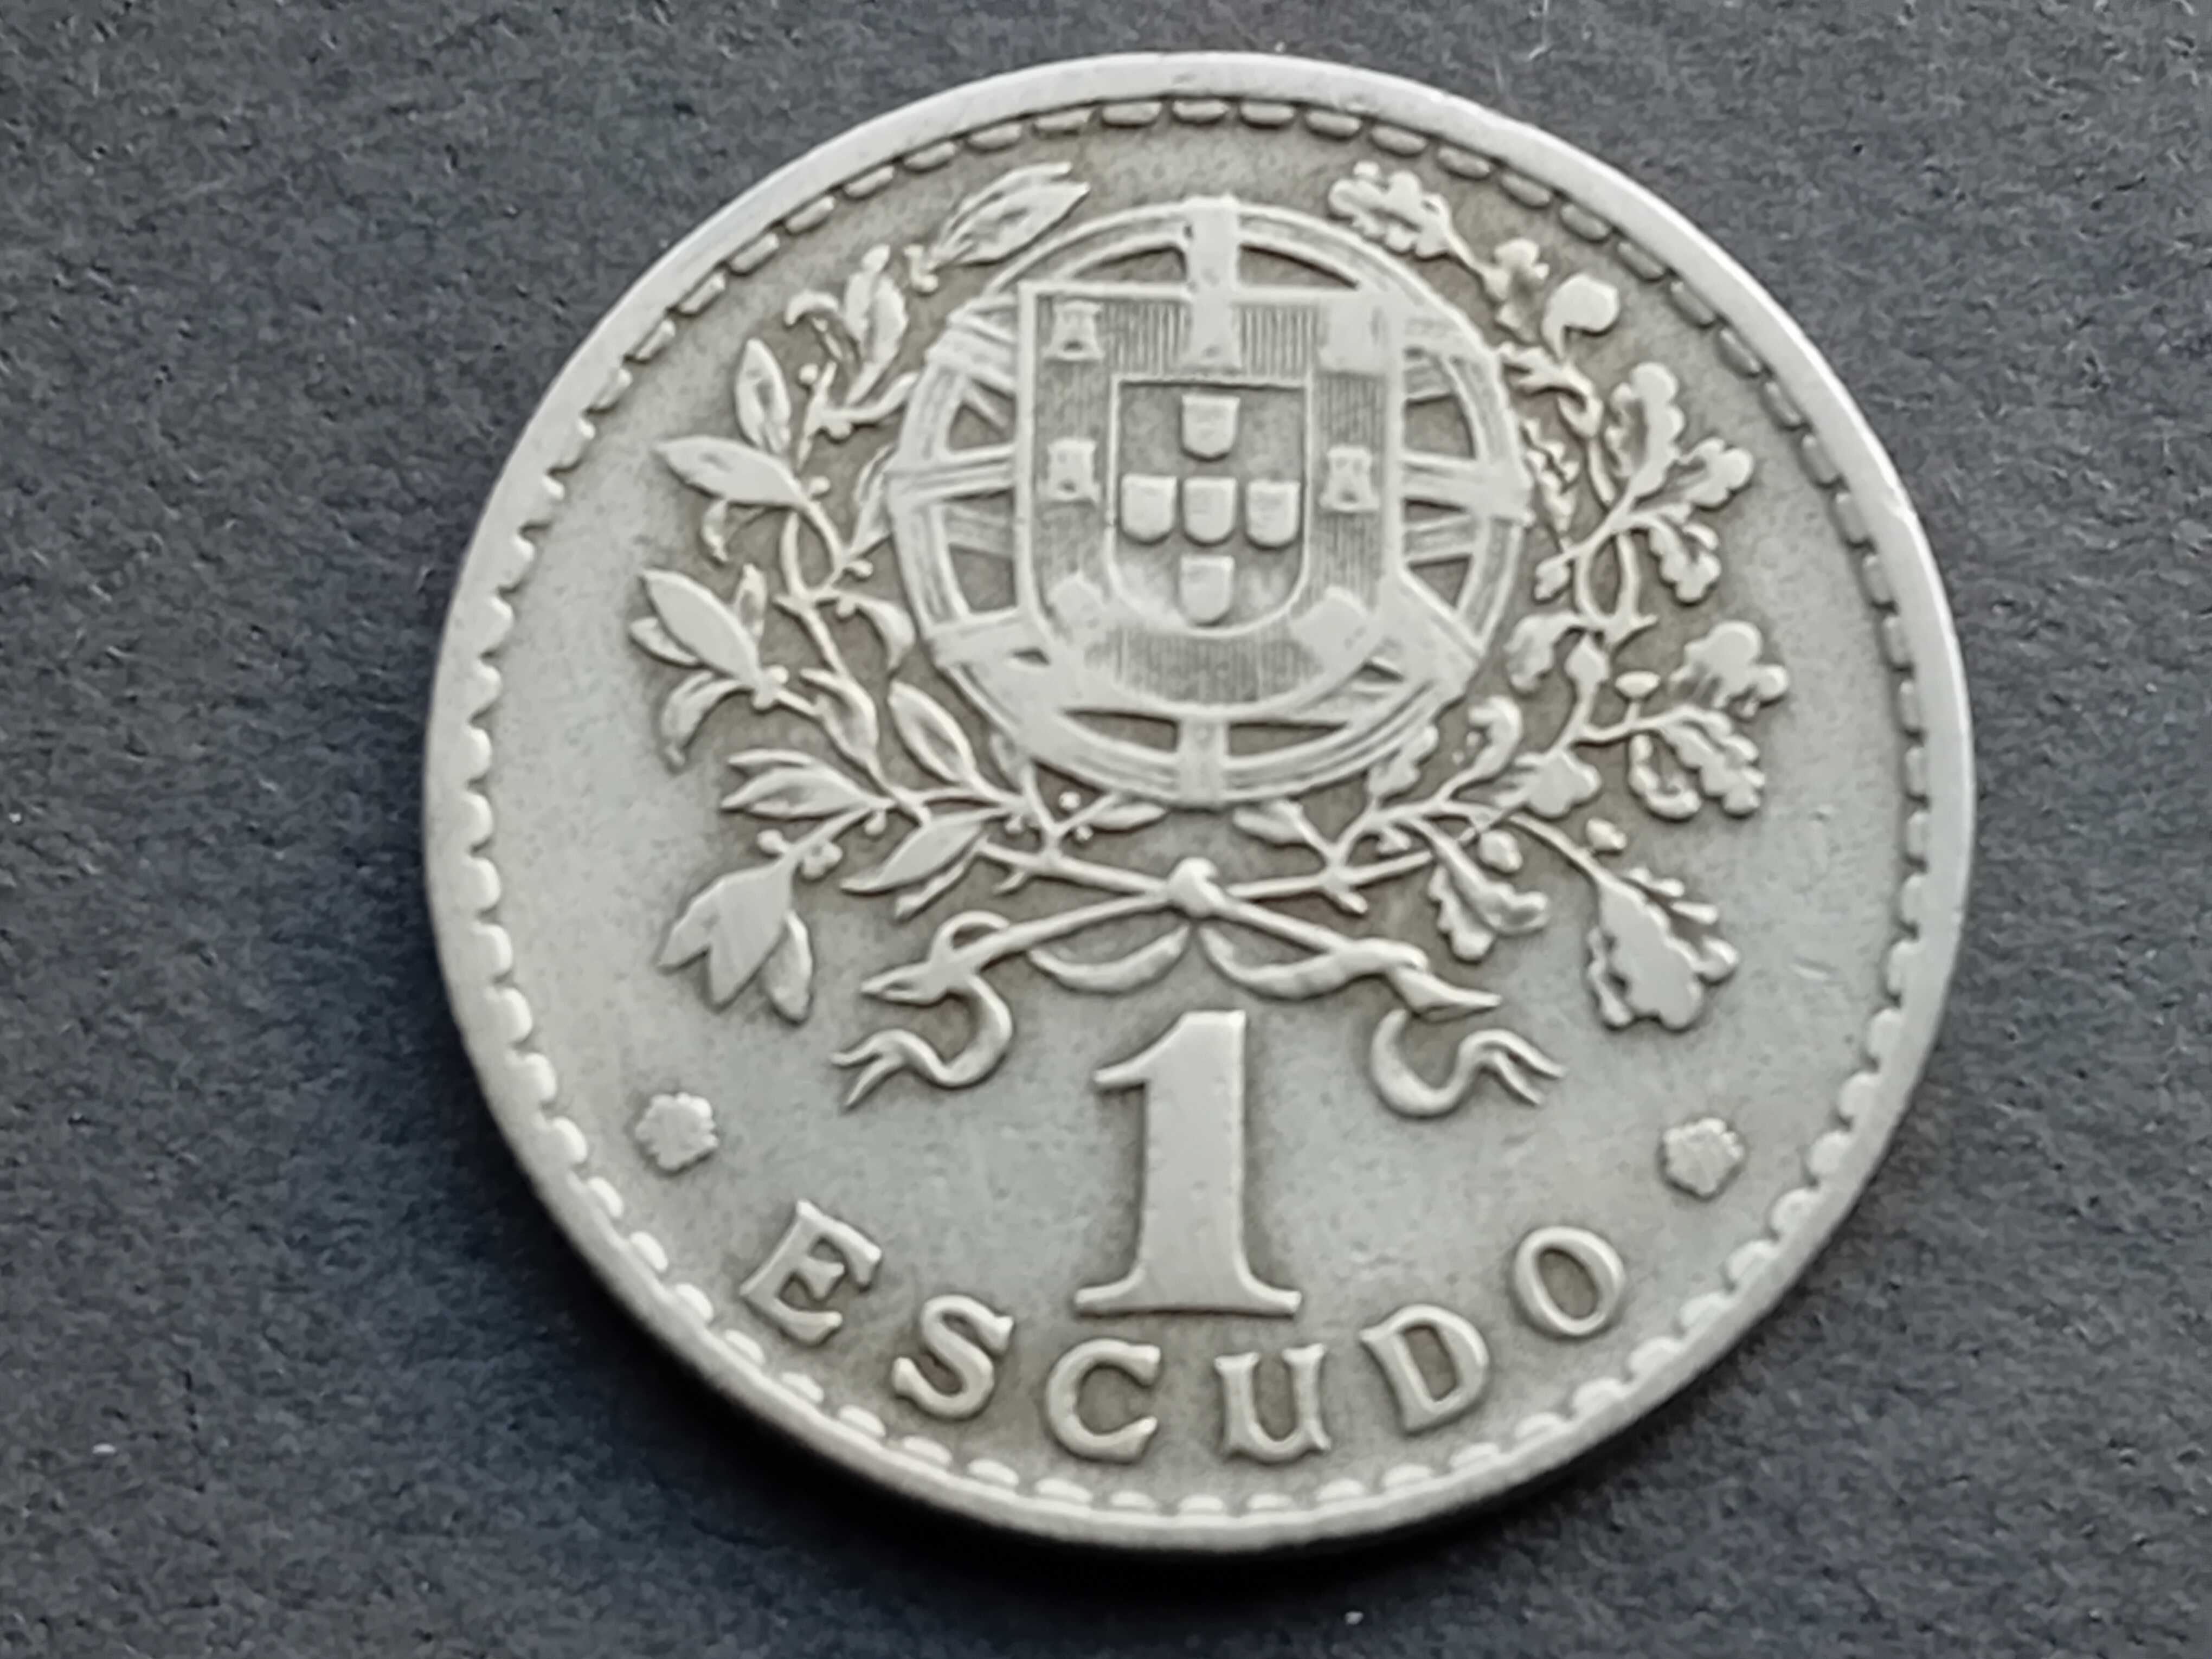 1 moeda de 1$00 1946 bem conservada rara